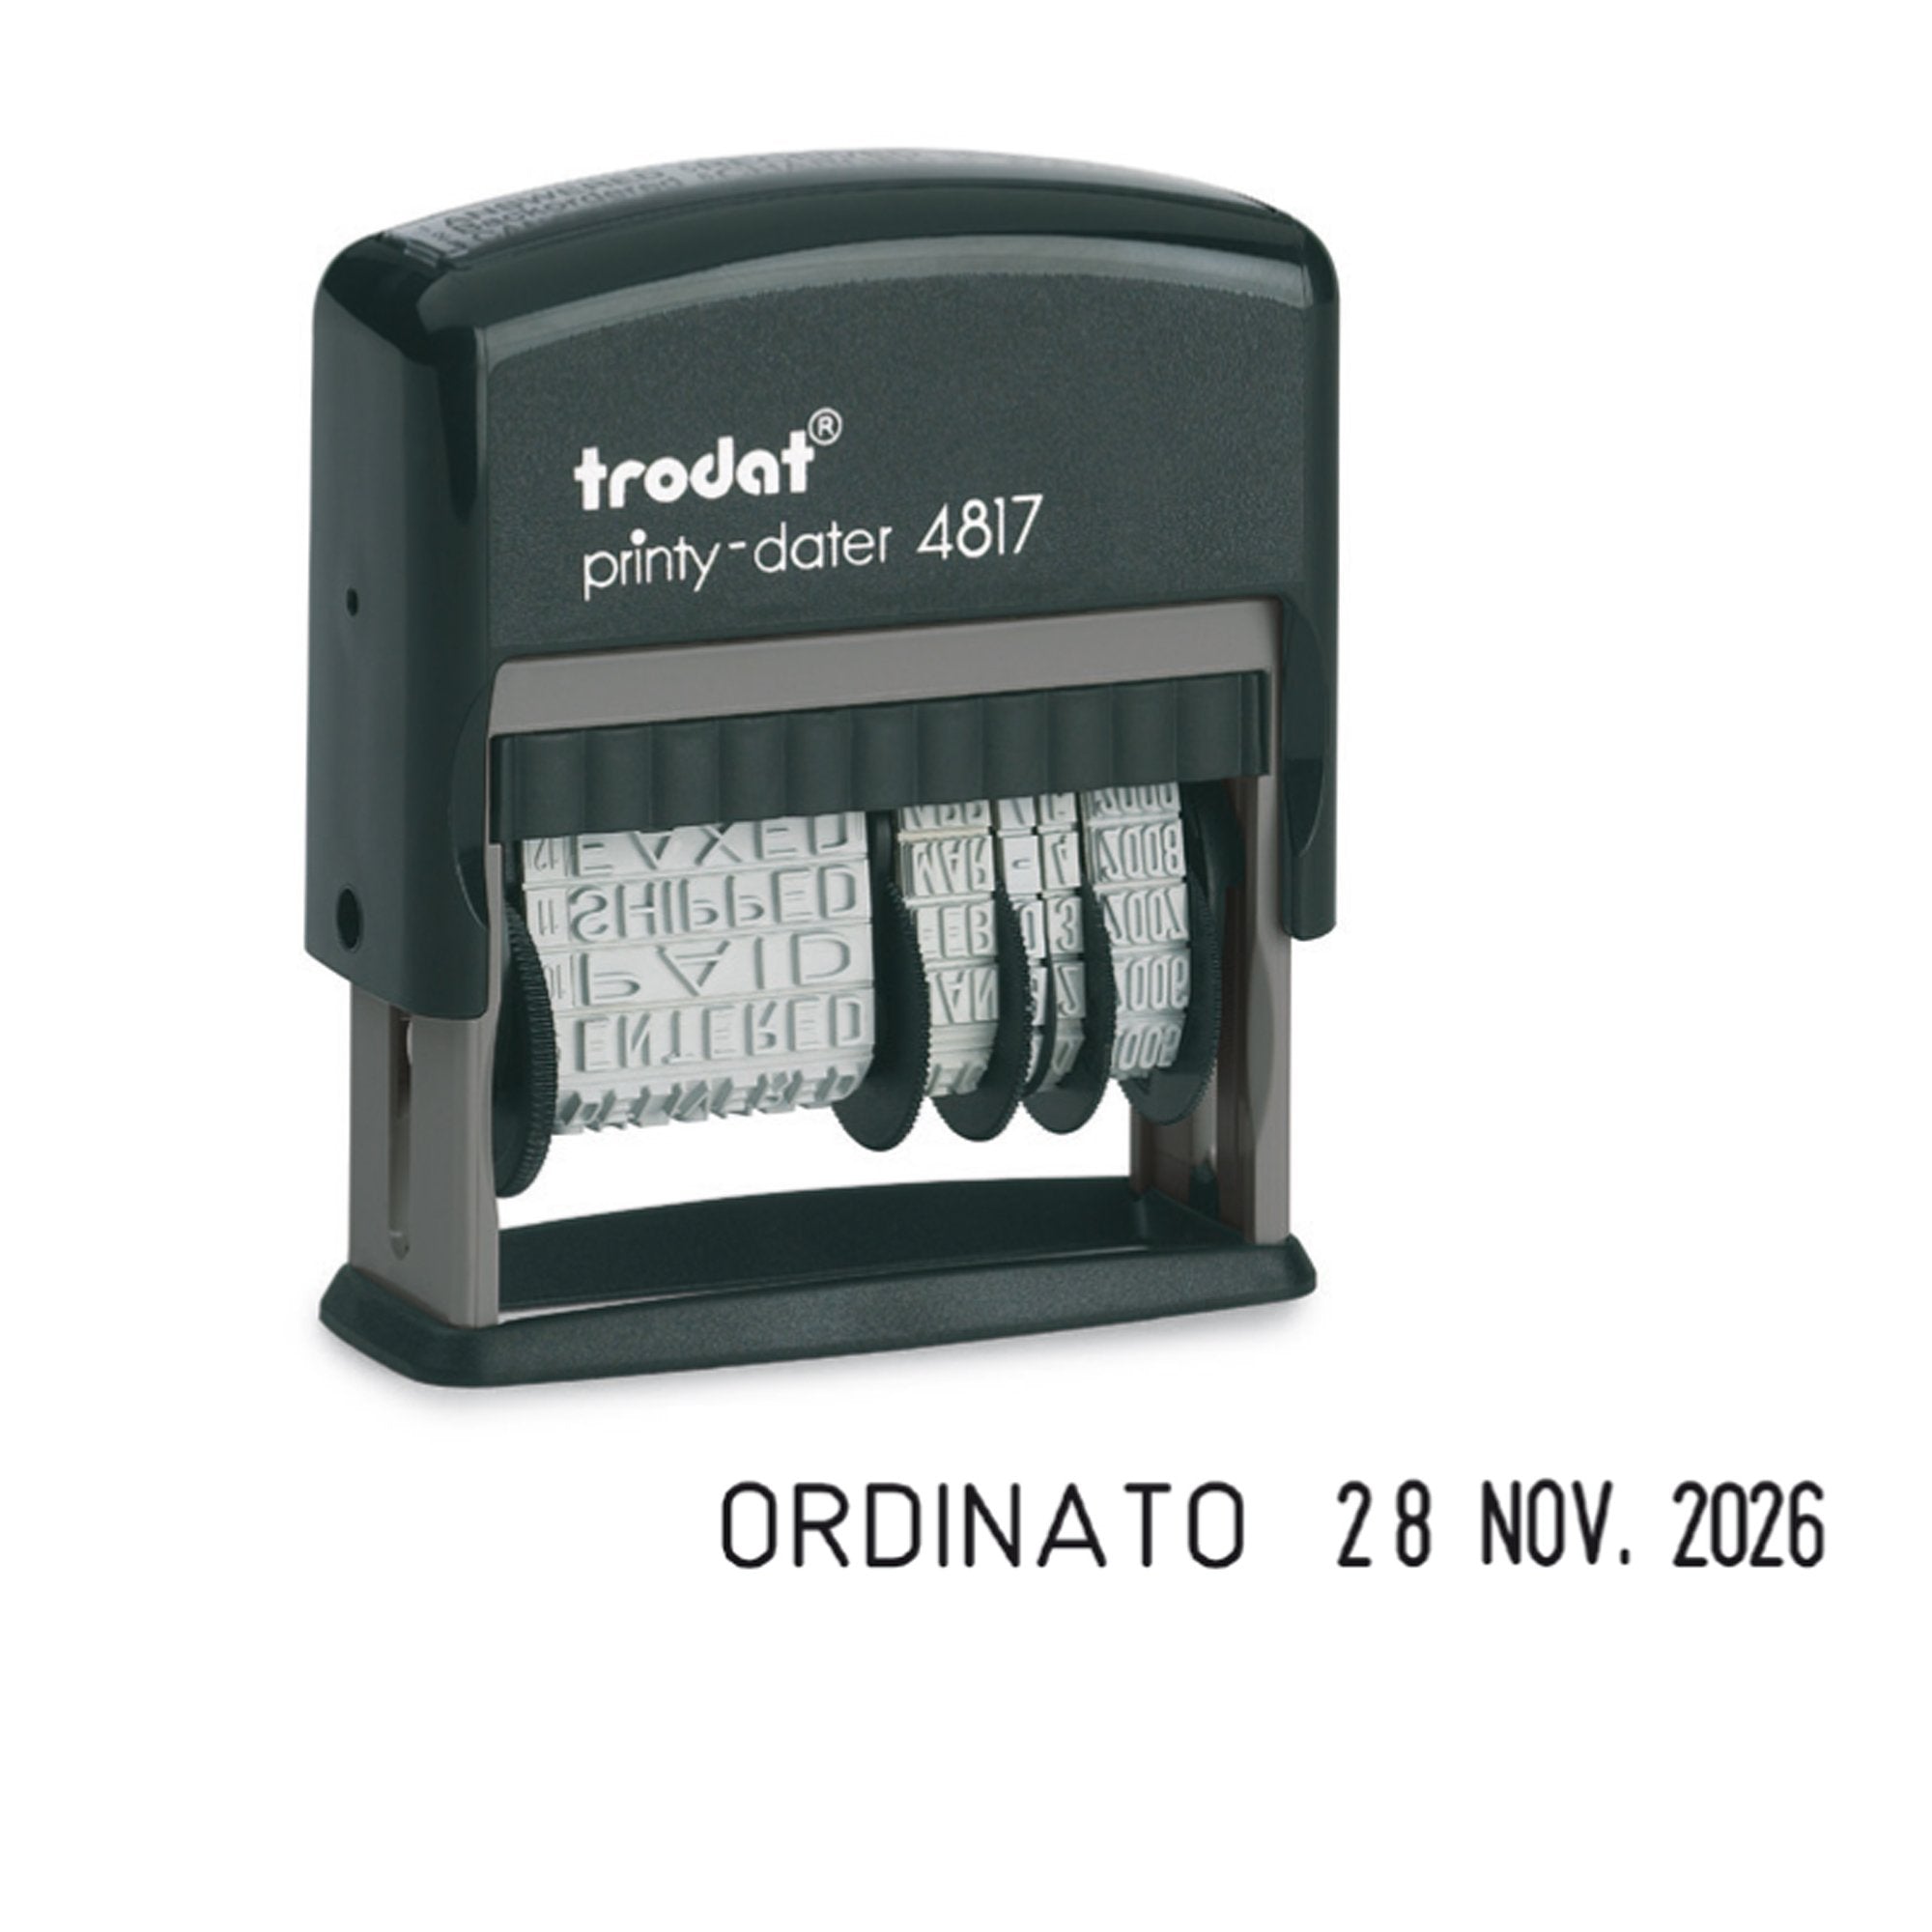 trodat-timbro-printy-eco-4817-datario-polinomio-3-8mm-autoinchiostrante